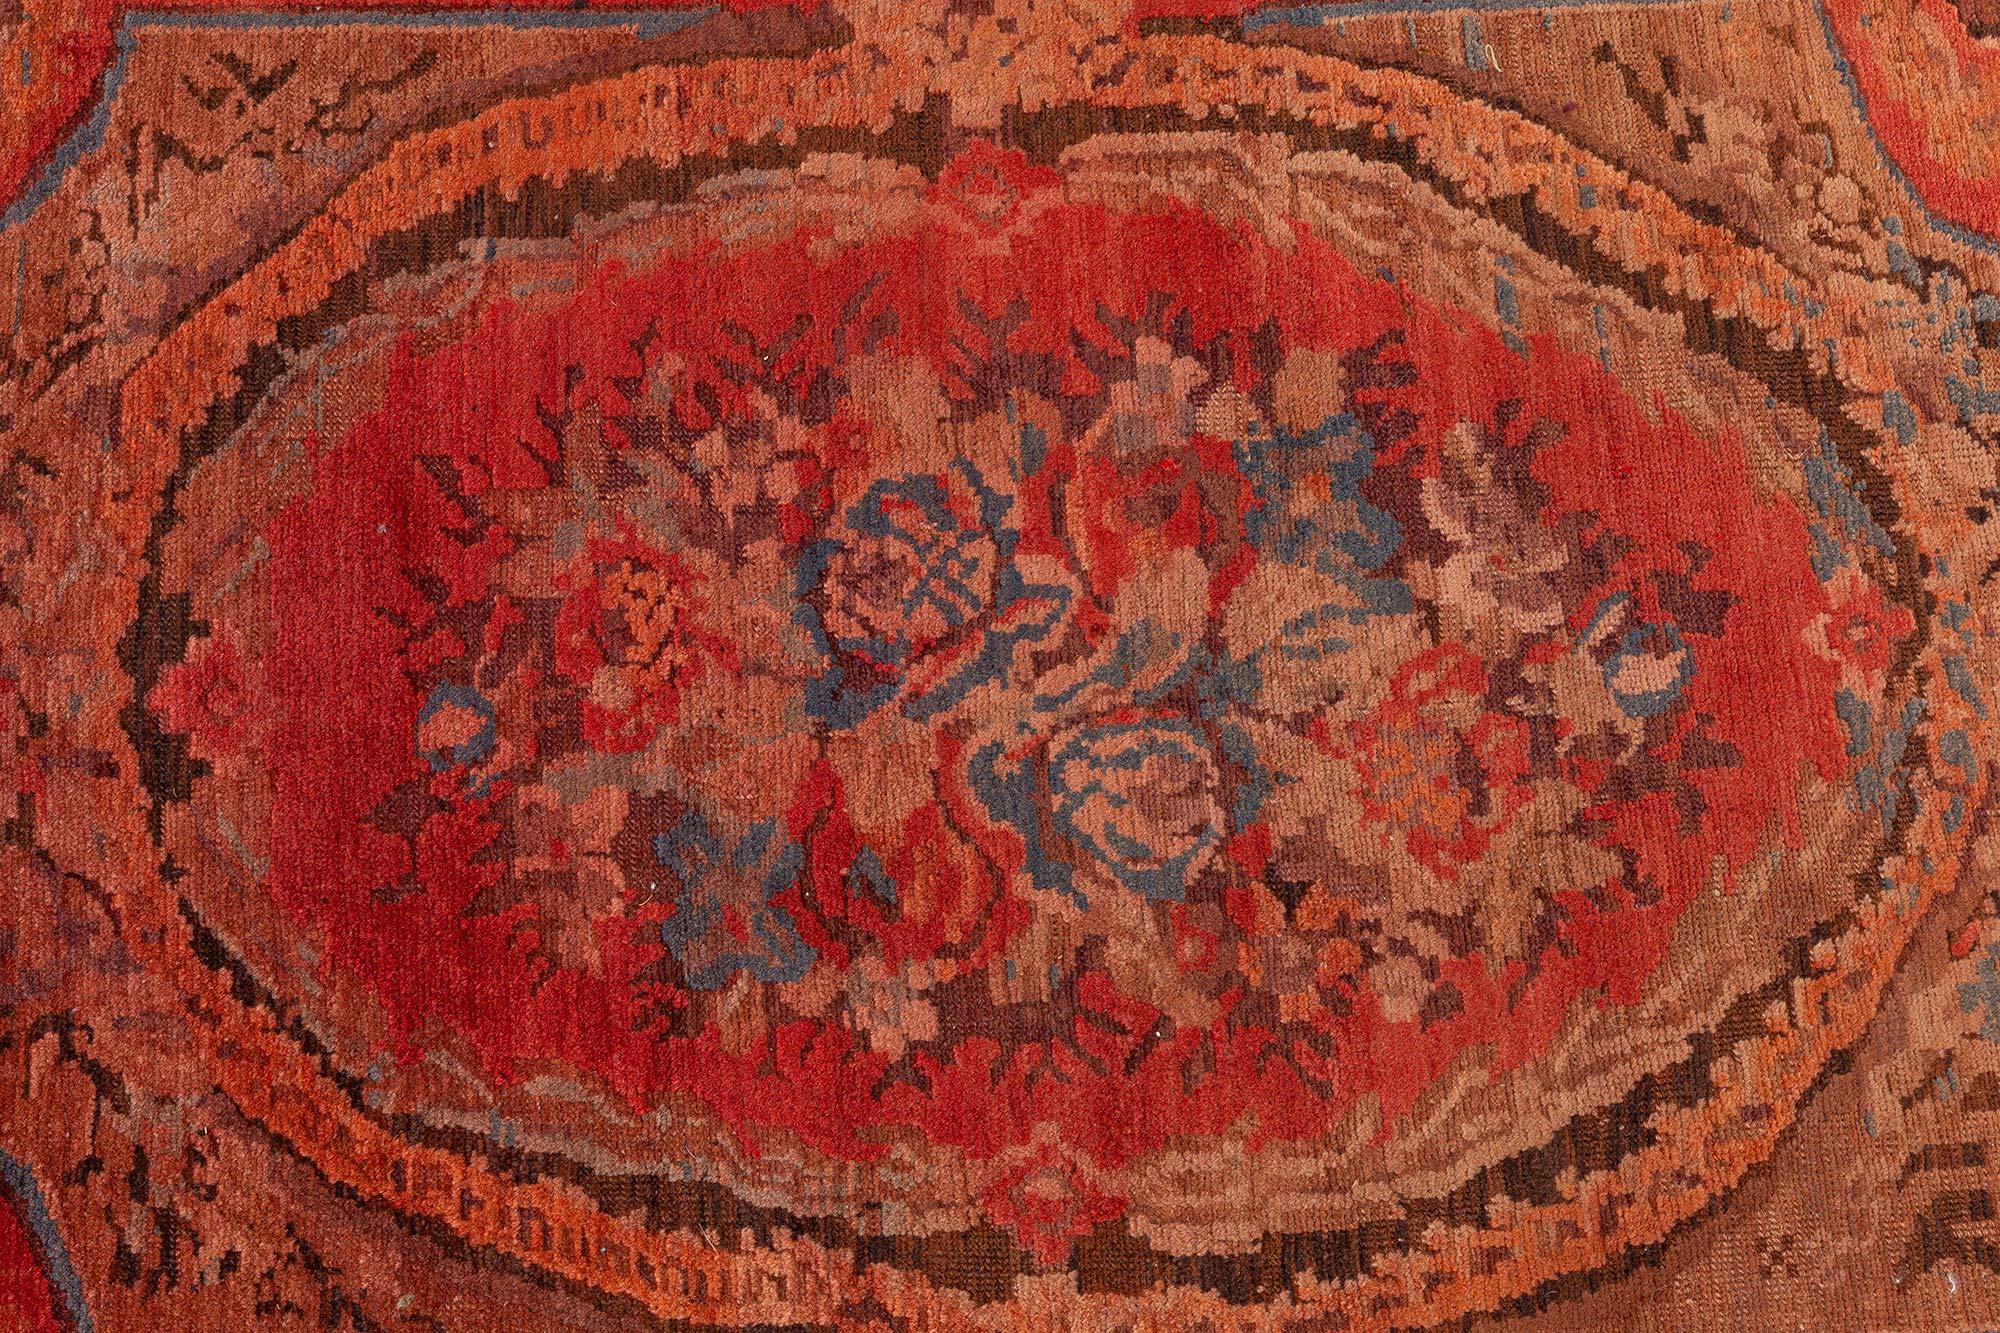 Handgefertigter kaukasischer Karabagh-Teppich aus der Zeit um 1900 in Rot, Orange und Braun
Größe: 7'9